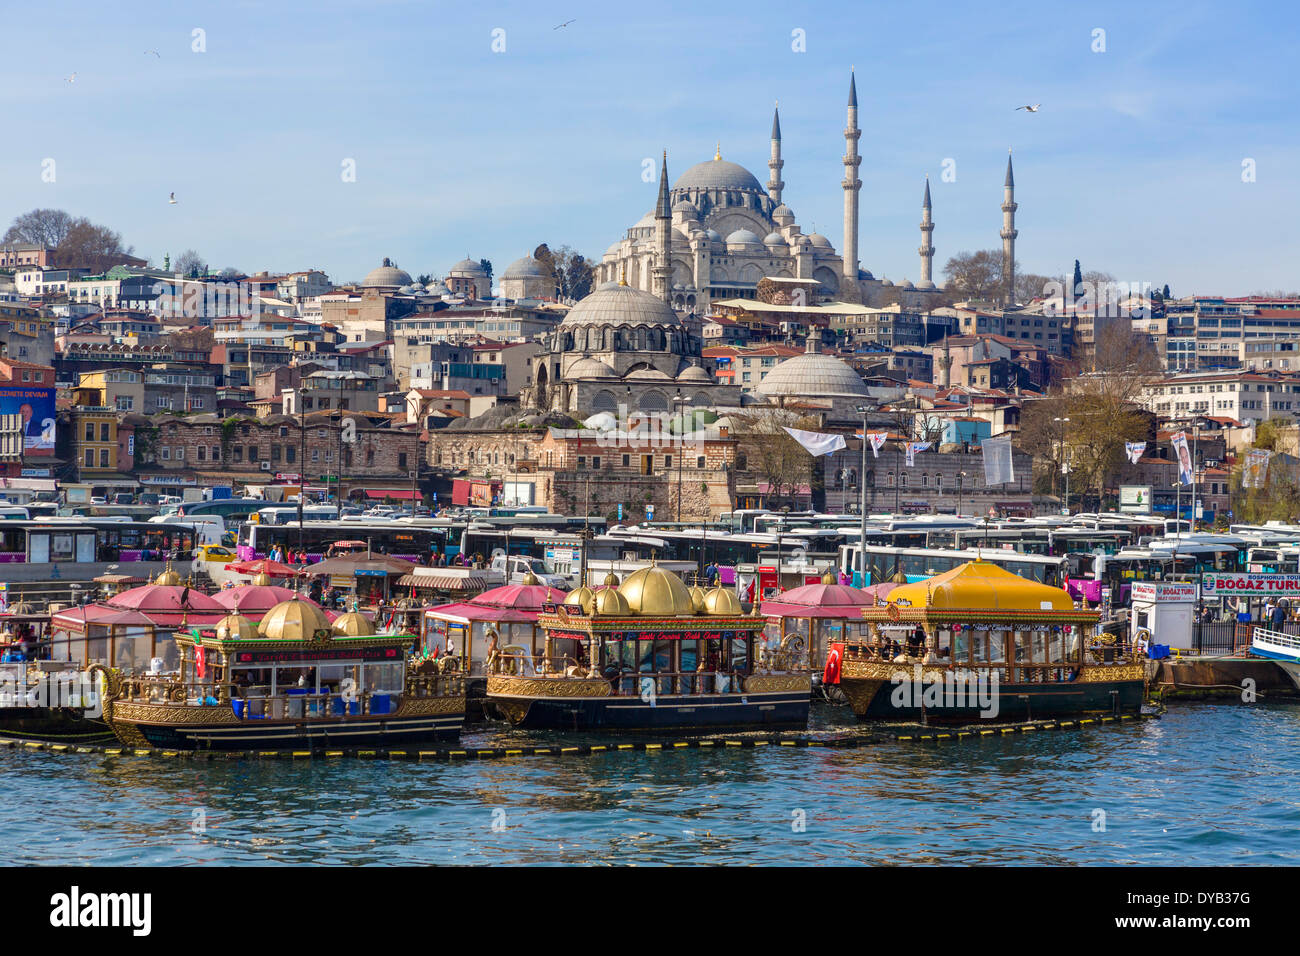 Decorative boats selling fish sandwiches (Tarihi Eminonu Balik Ekmek) with Suleymaniye Mosque behind, Eminonu, Istanbul, Turkey Stock Photo